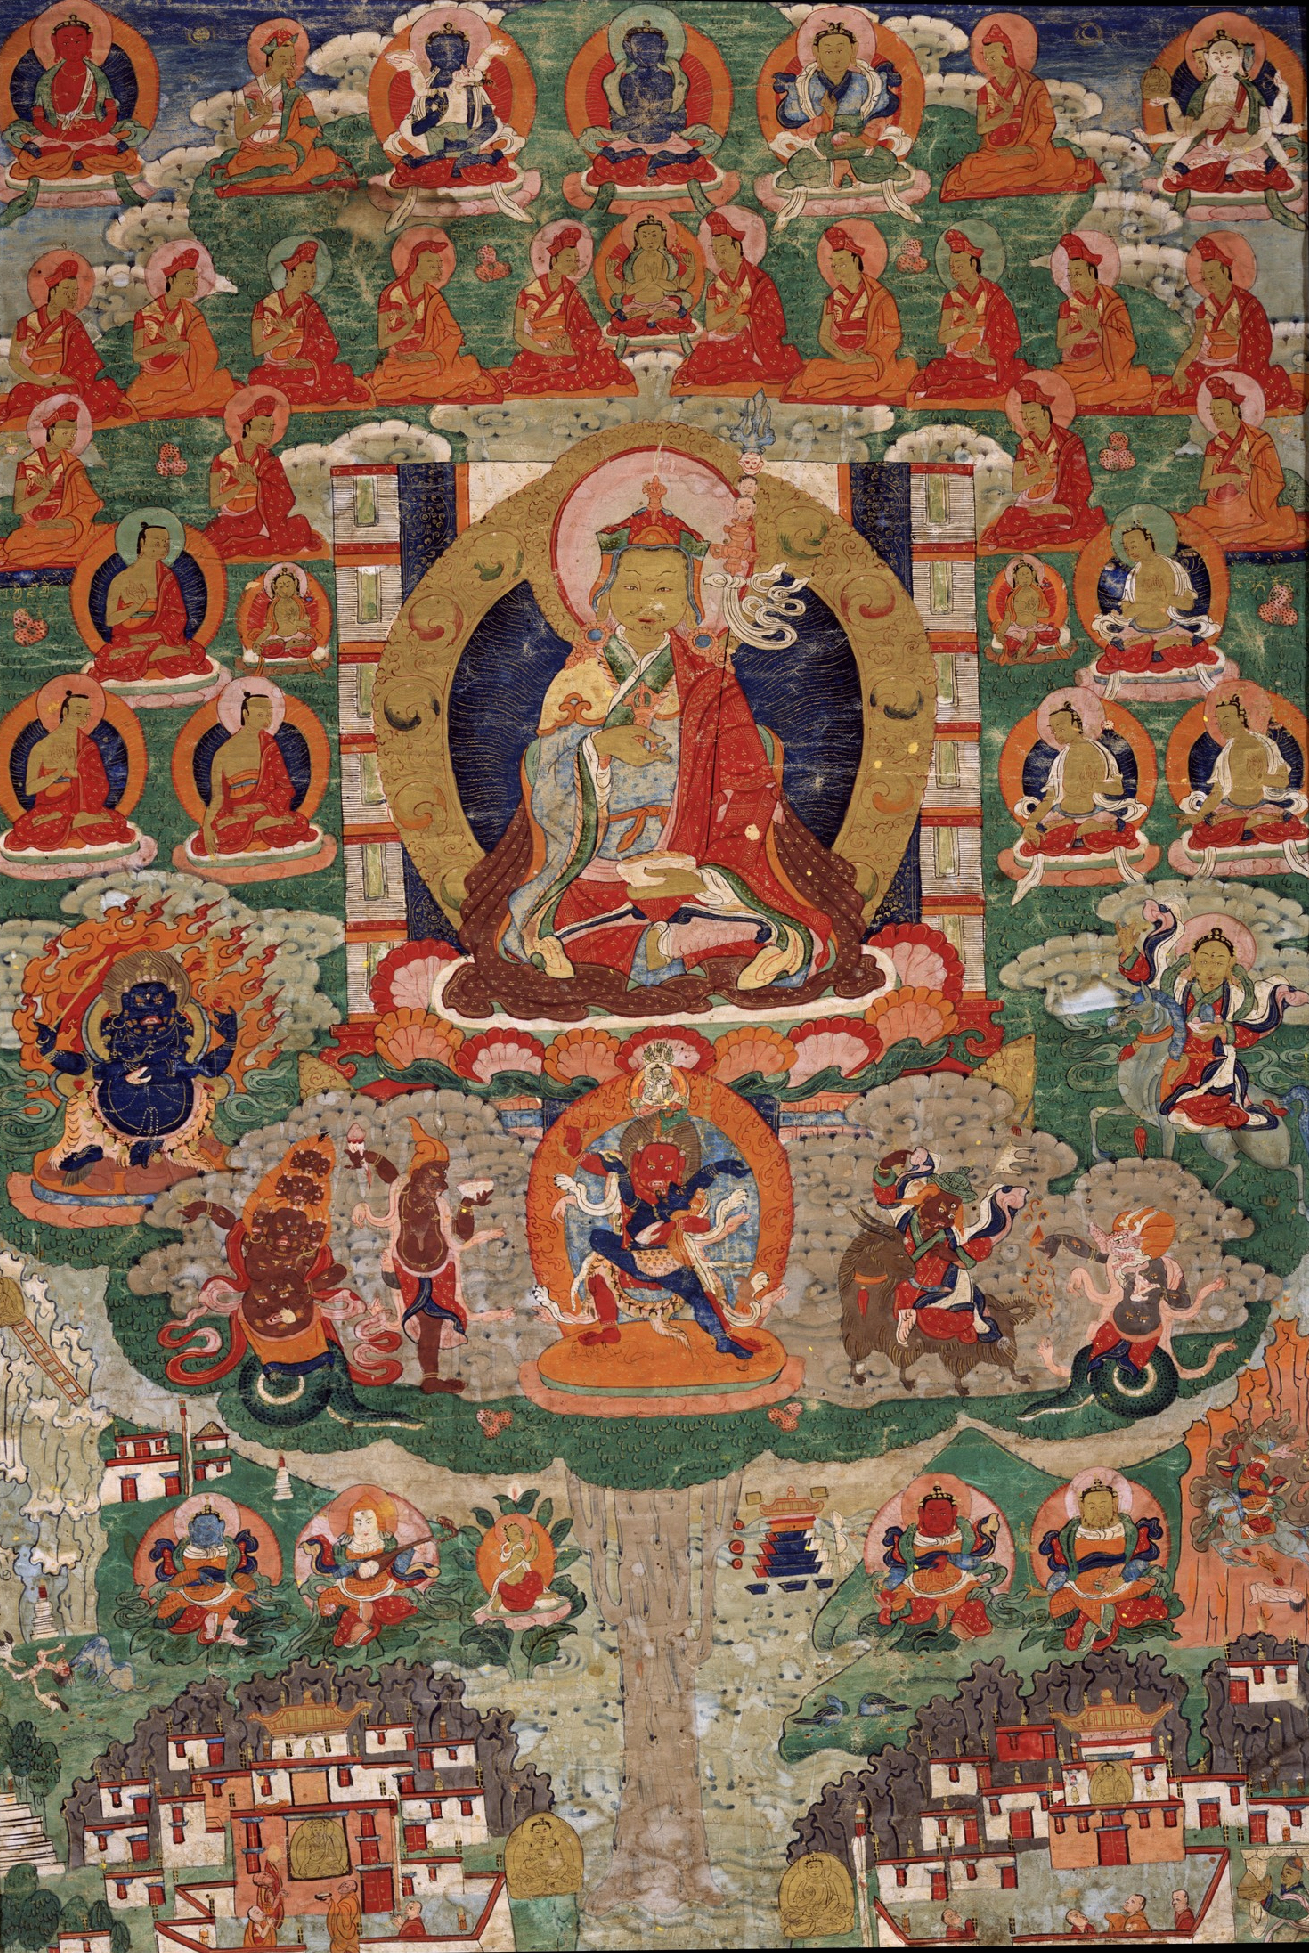 Padmasambhava with Drigung Kagyu Refuge Field - The Treasury of